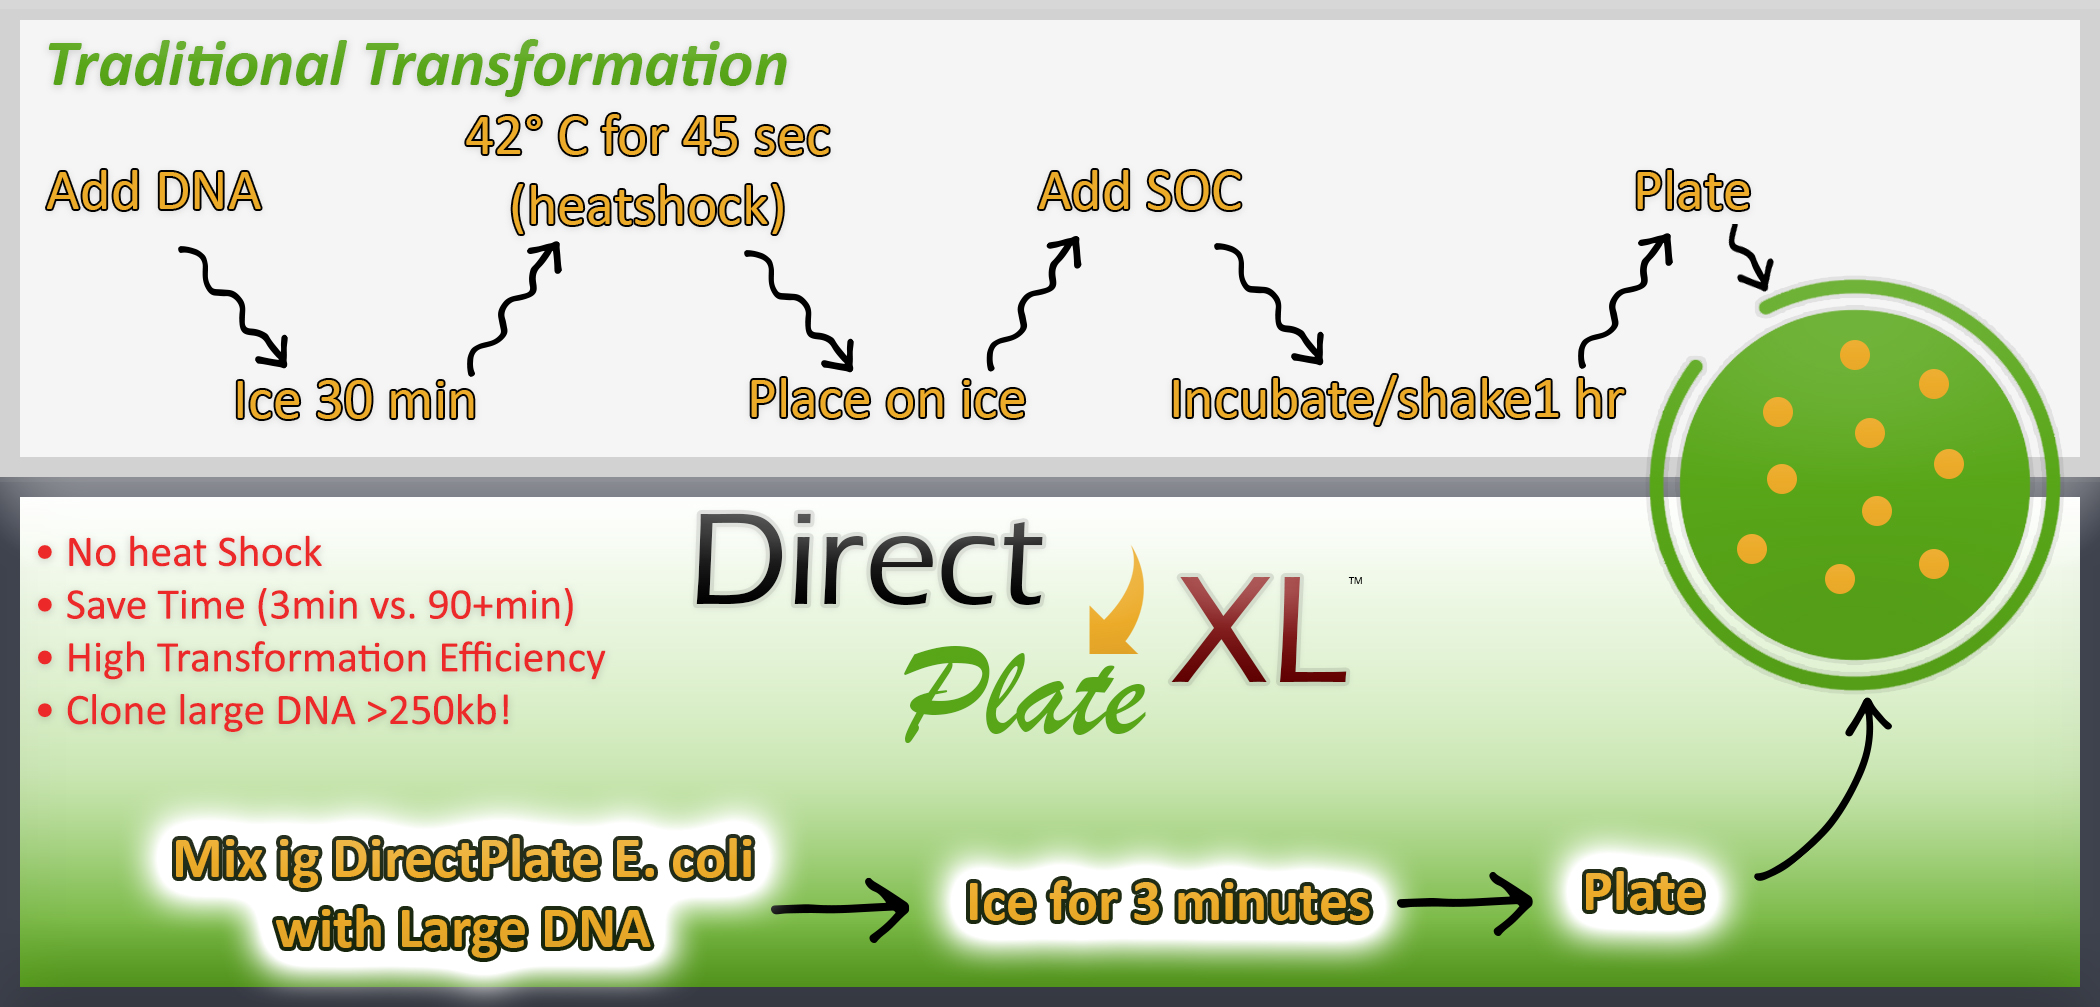 DirectPlate XL Protocol Comparison